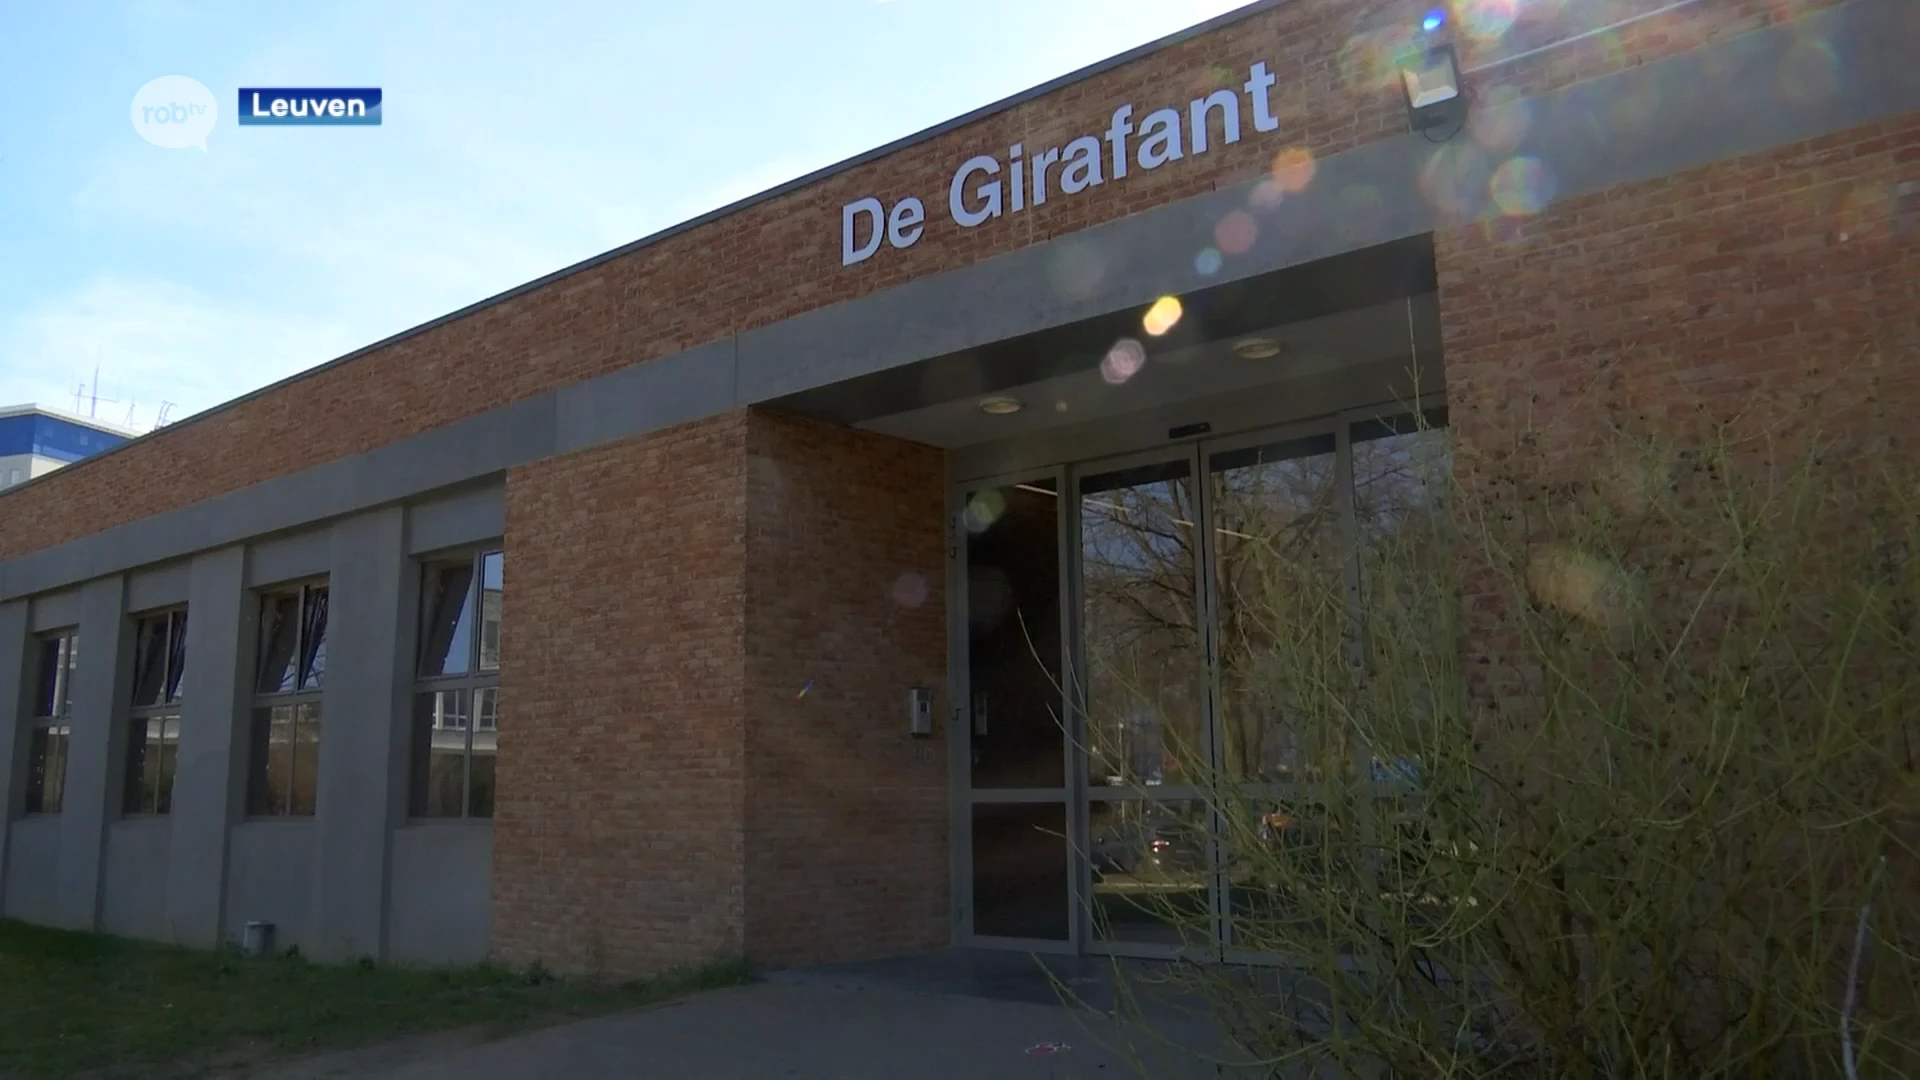 Kinderopvang De Girafant in Leuven moet gerenoveerd worden door constructiefouten, stad wil meerdere, kleinere kinderdagverblijven